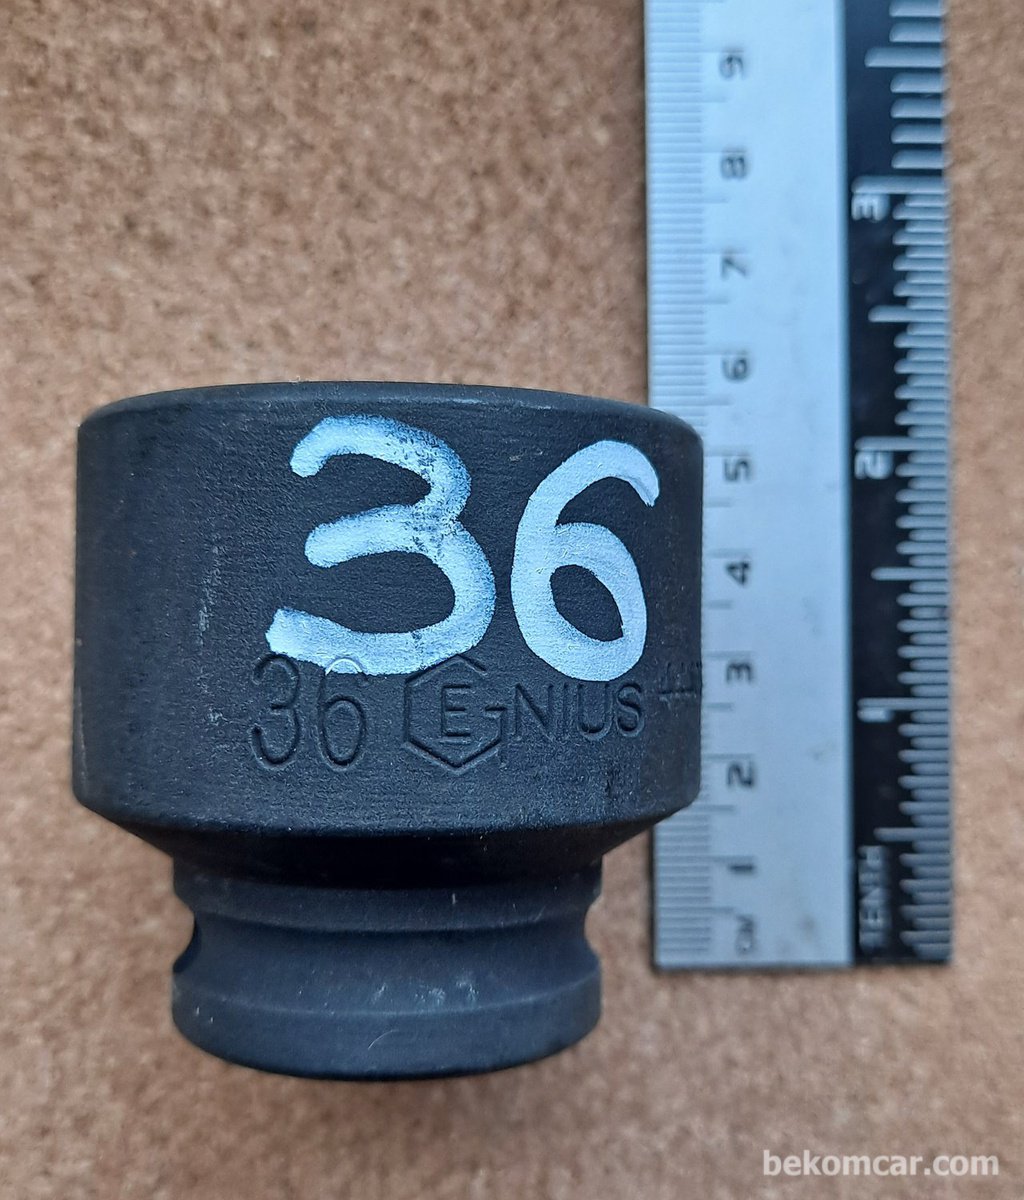 6각 36mm 임팩트용 1/2" 소켓|بيكومكار  (bekomcar)